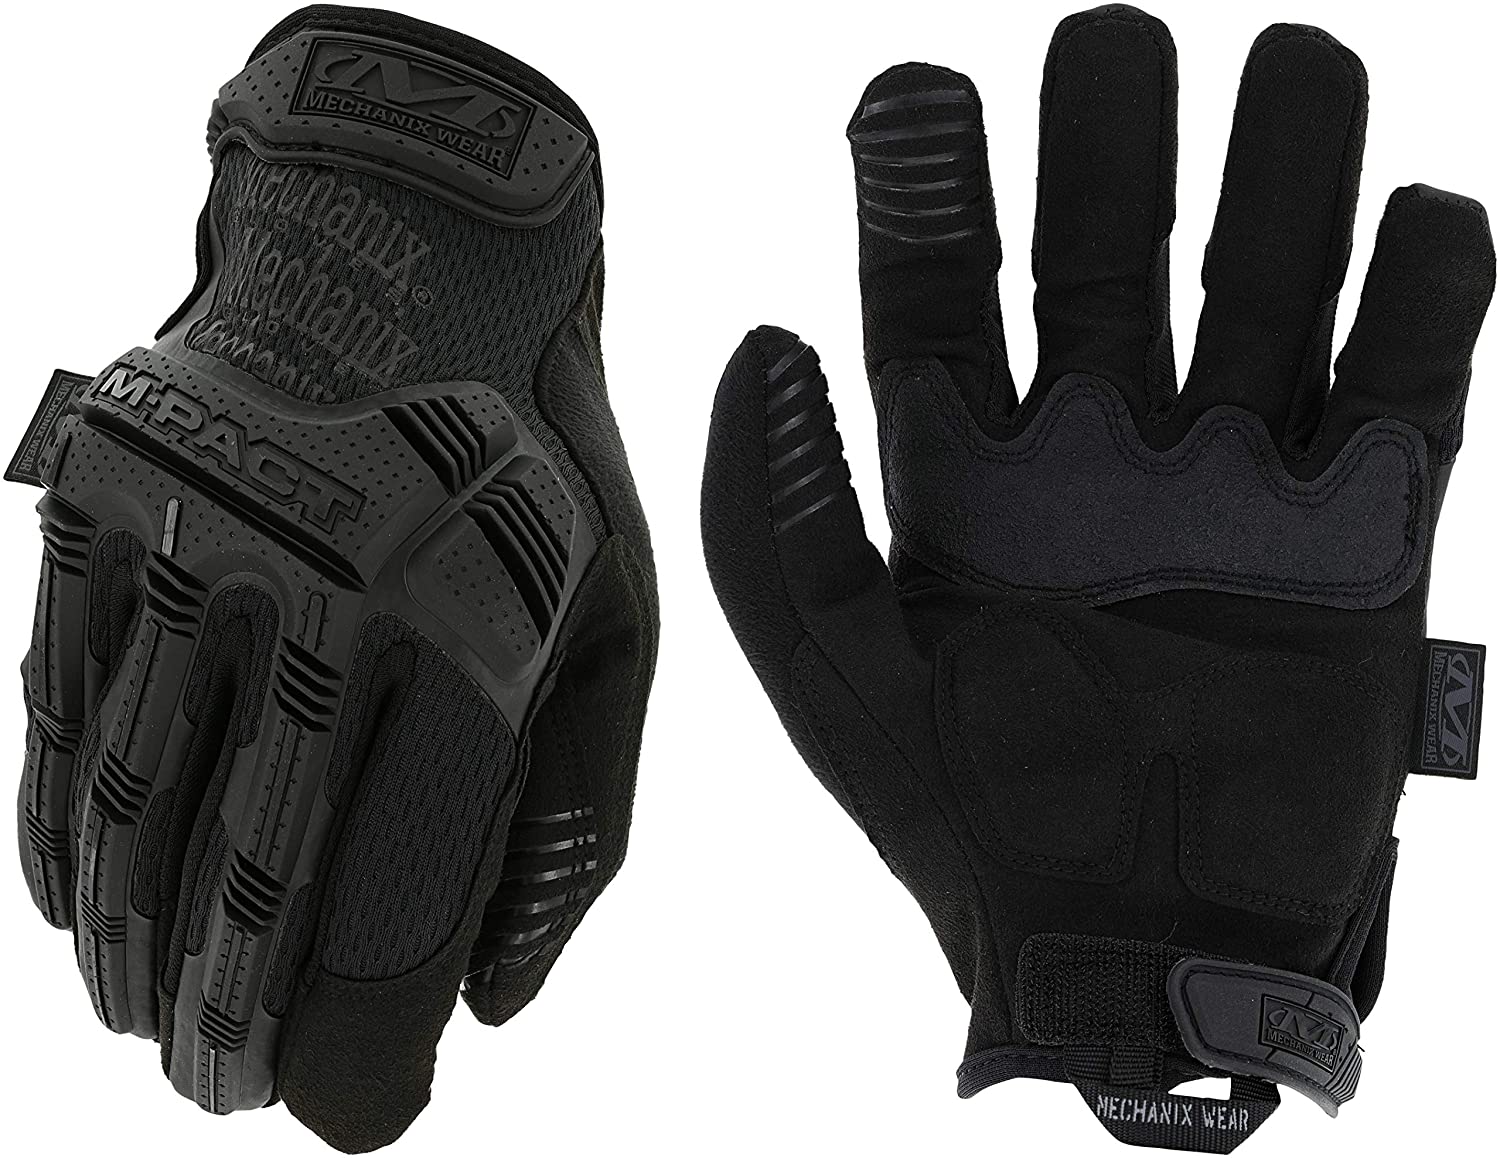 

Mechanix Wear - -Pact Covert Tactical Gloves